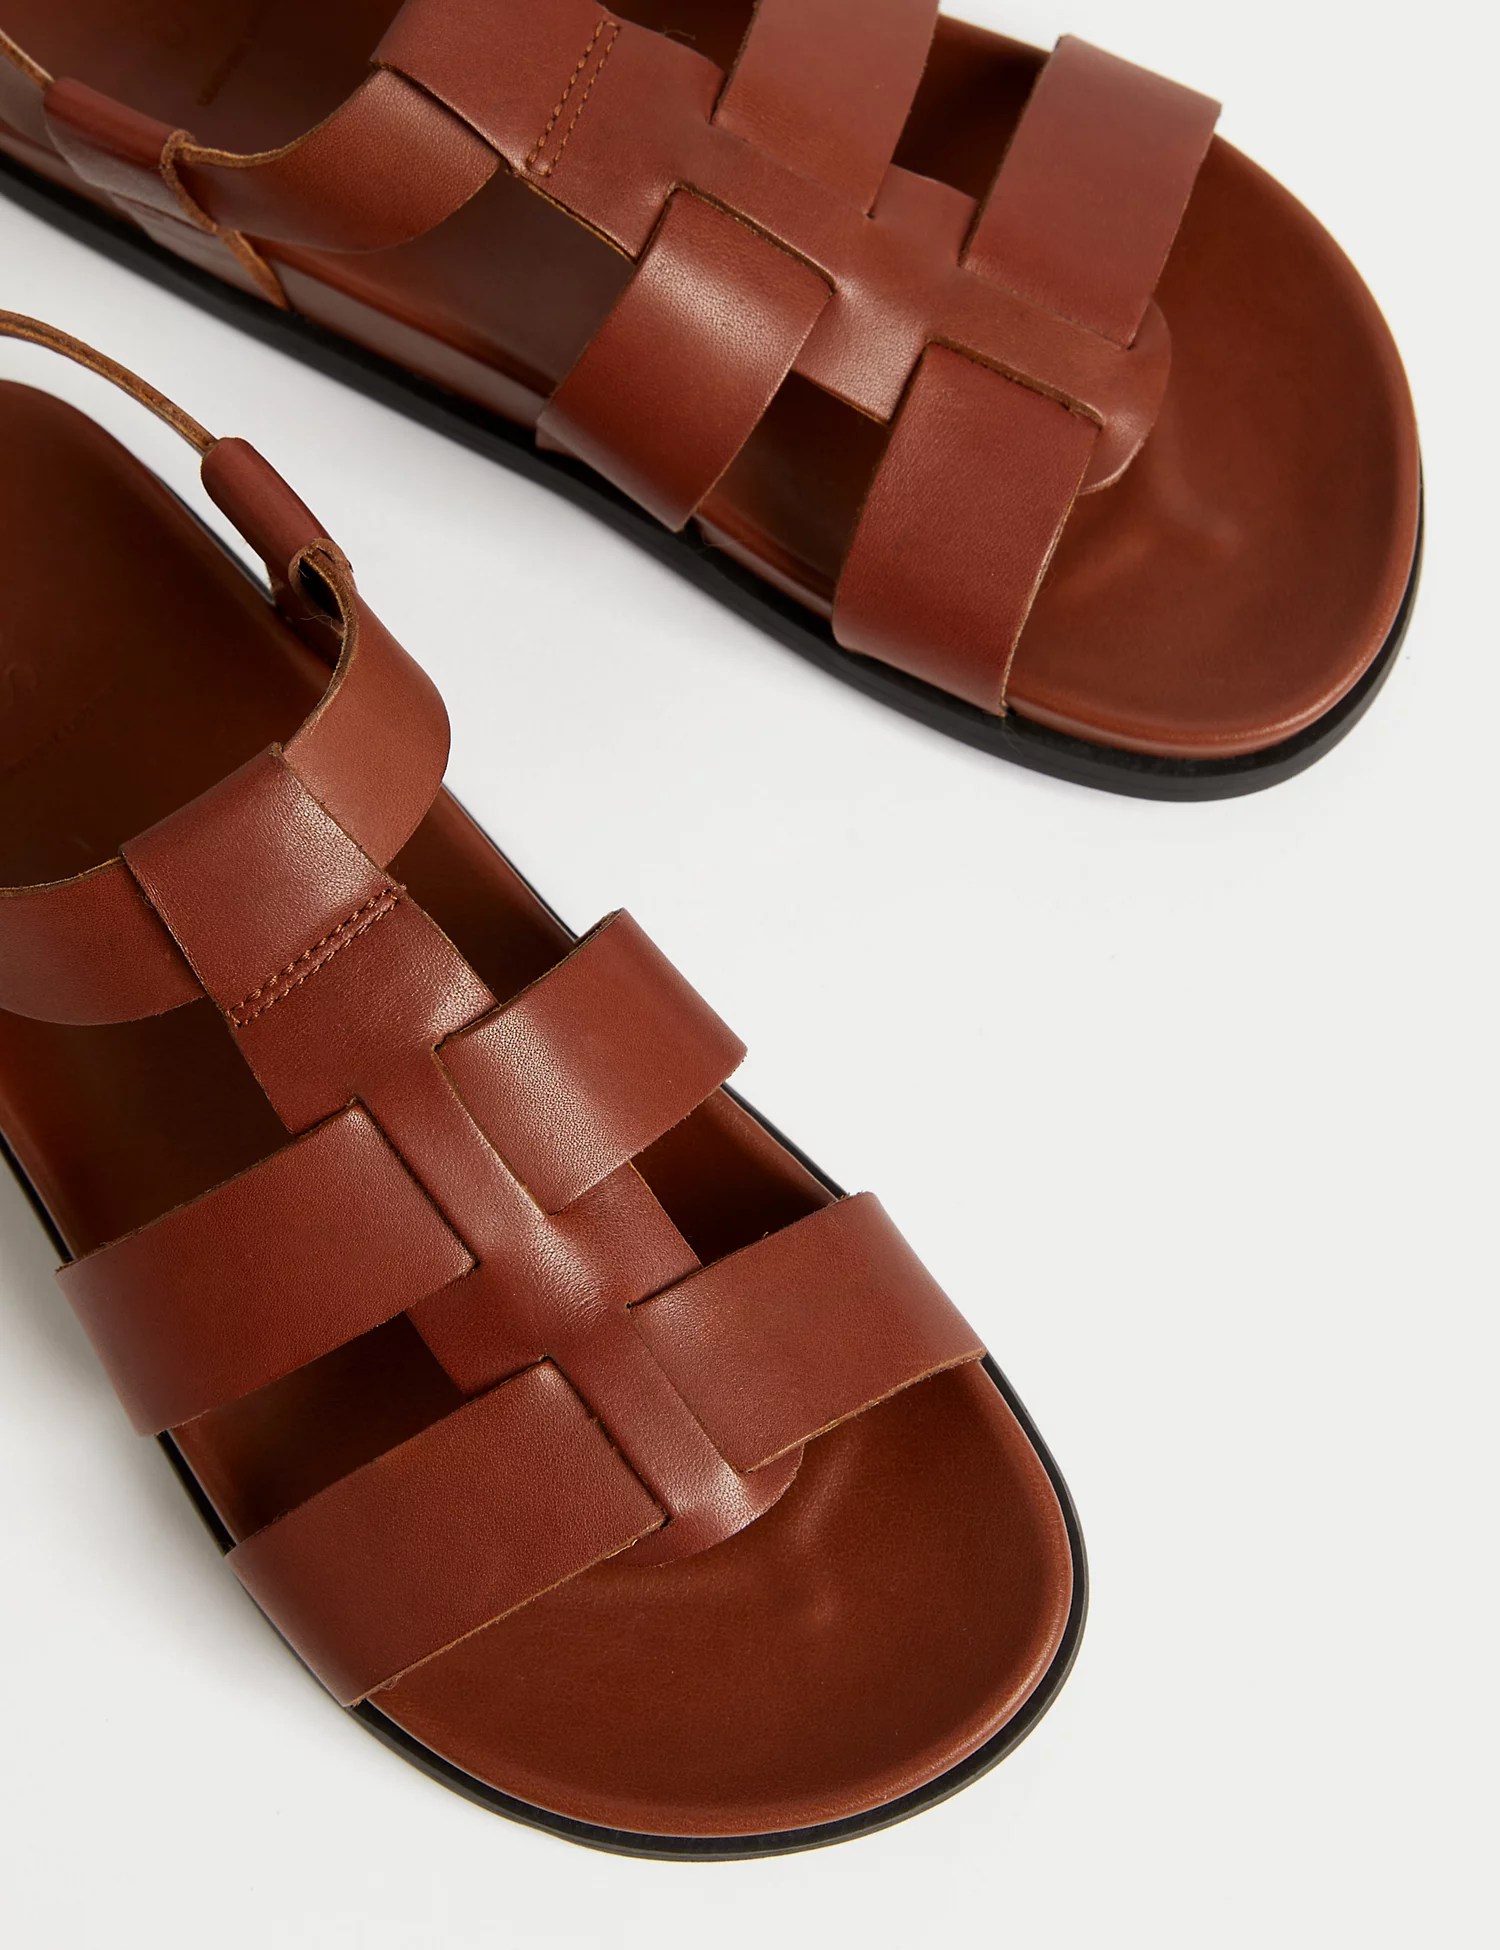 Las sandalias de cuero también vienen en color canela.